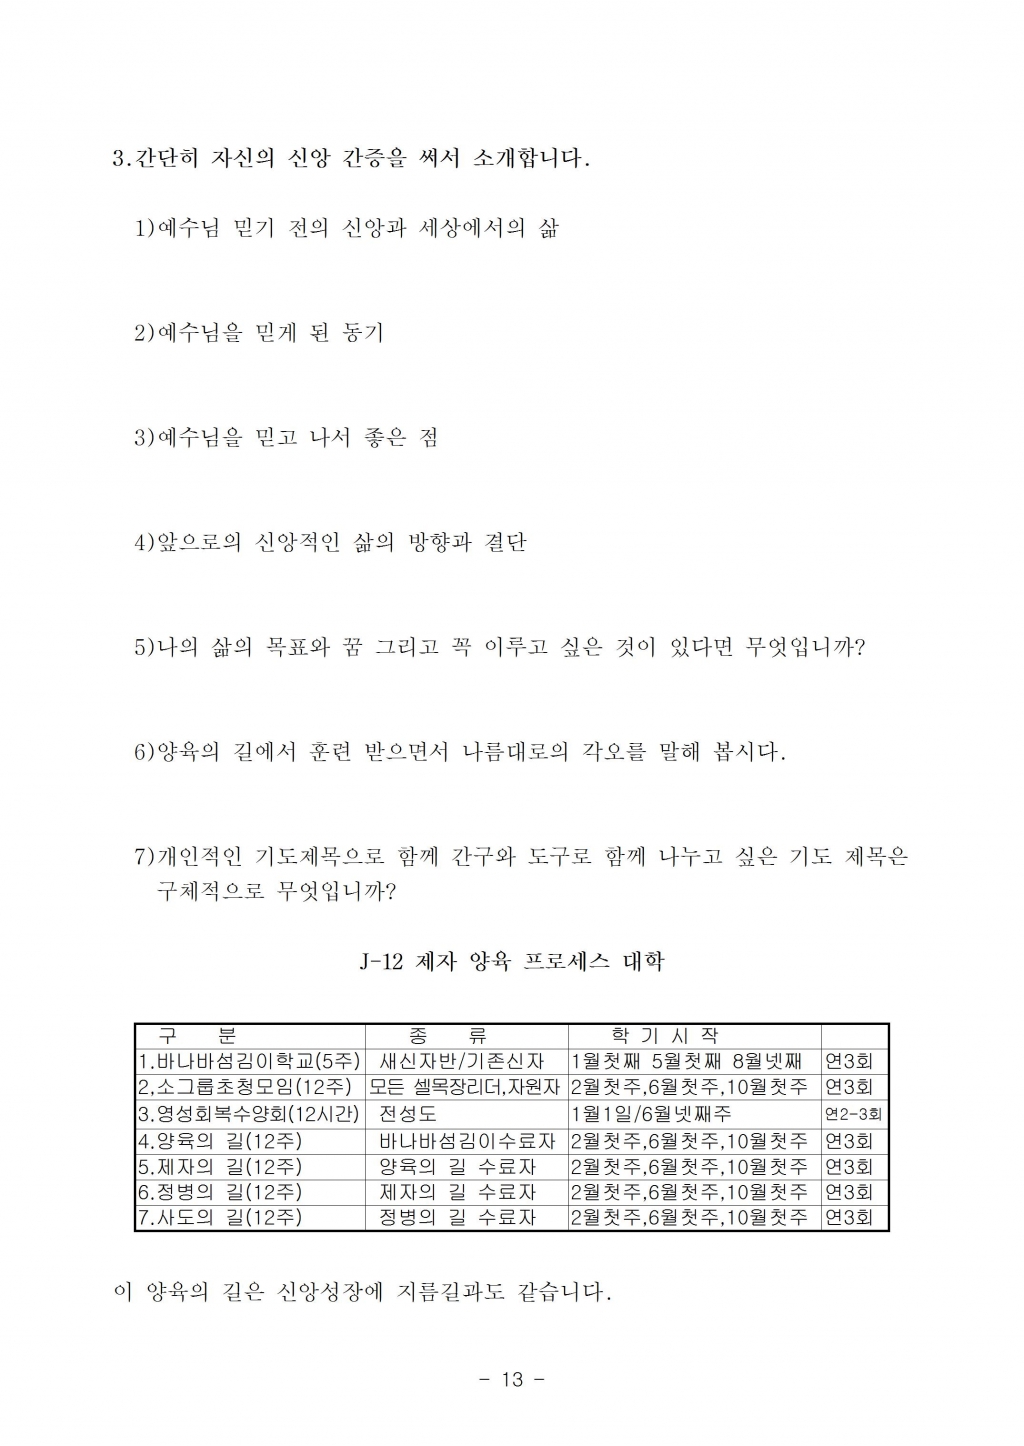 양육의길제자용2007년6월(수정)013.jpg